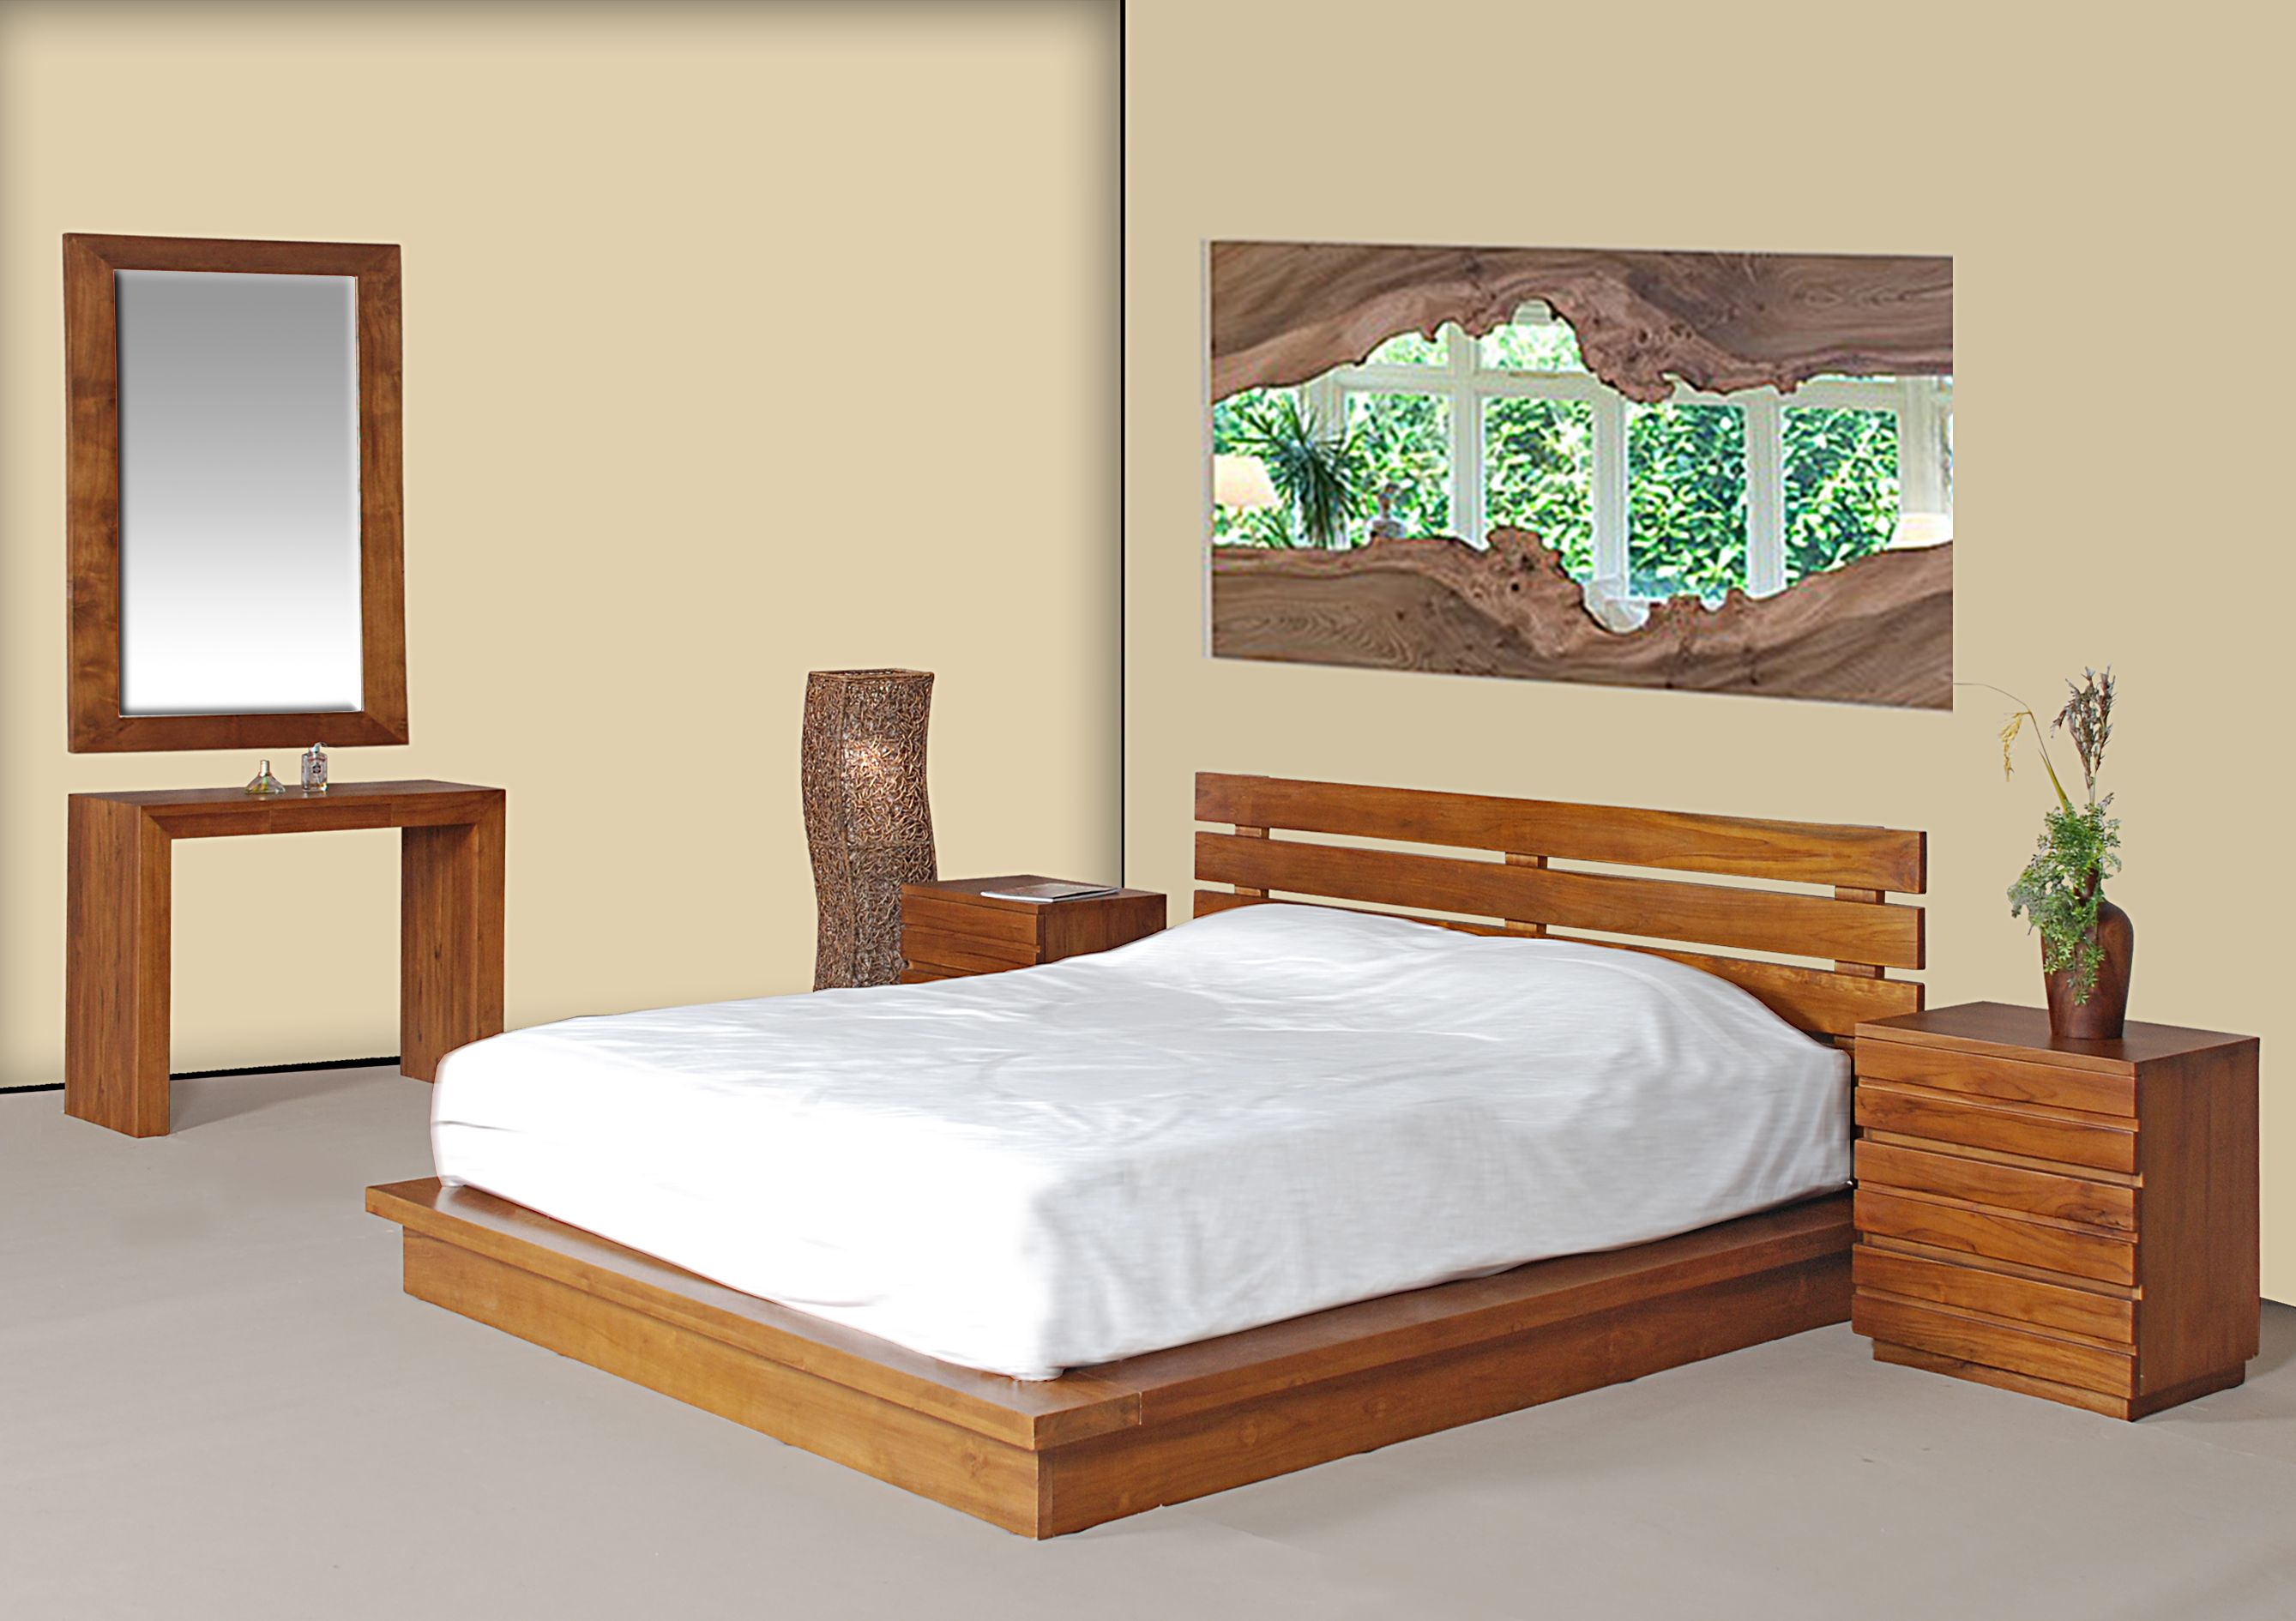 Teak Wood Bedroom Set In Malaysia 03 80820341 Teak Wood Bedroom with regard to measurements 2677 X 1890